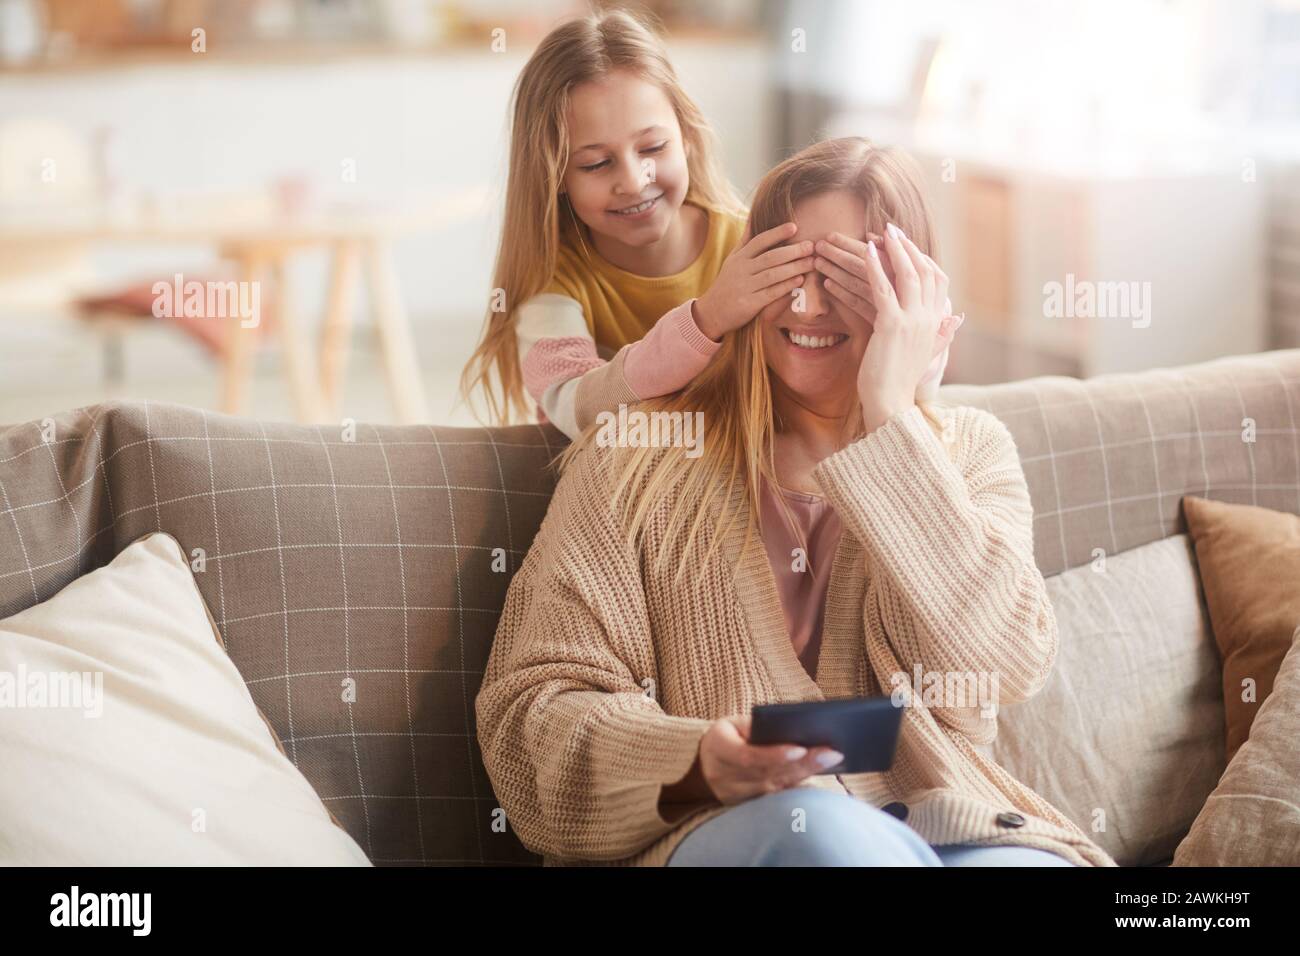 Zwei brünette Lesbengirls besorgen es sich am Sofa